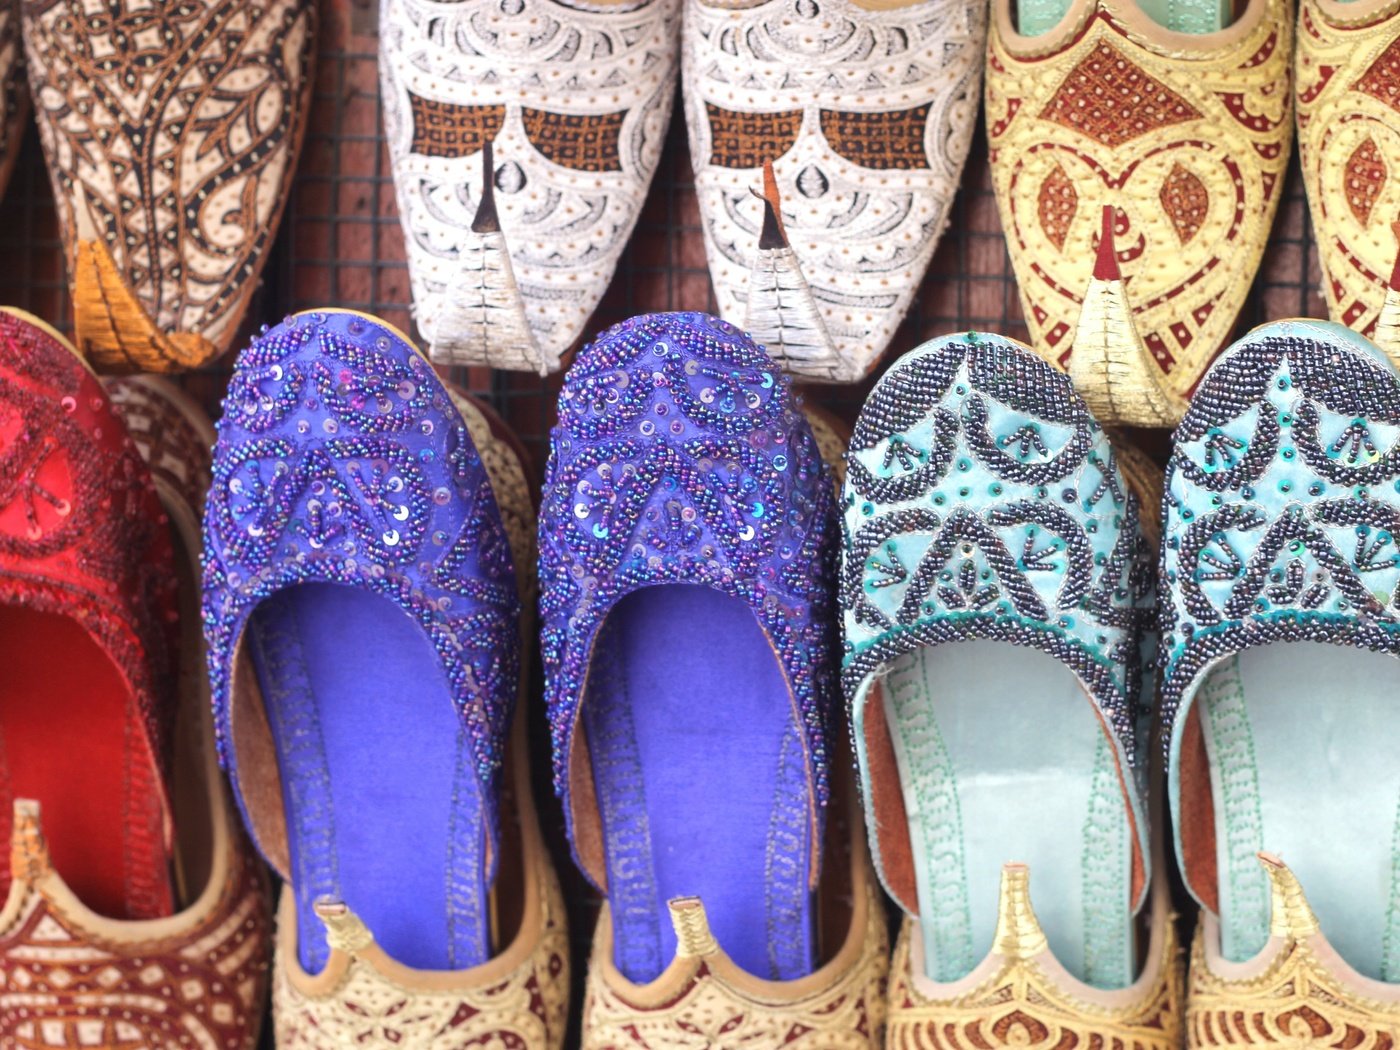 Арабские туфли